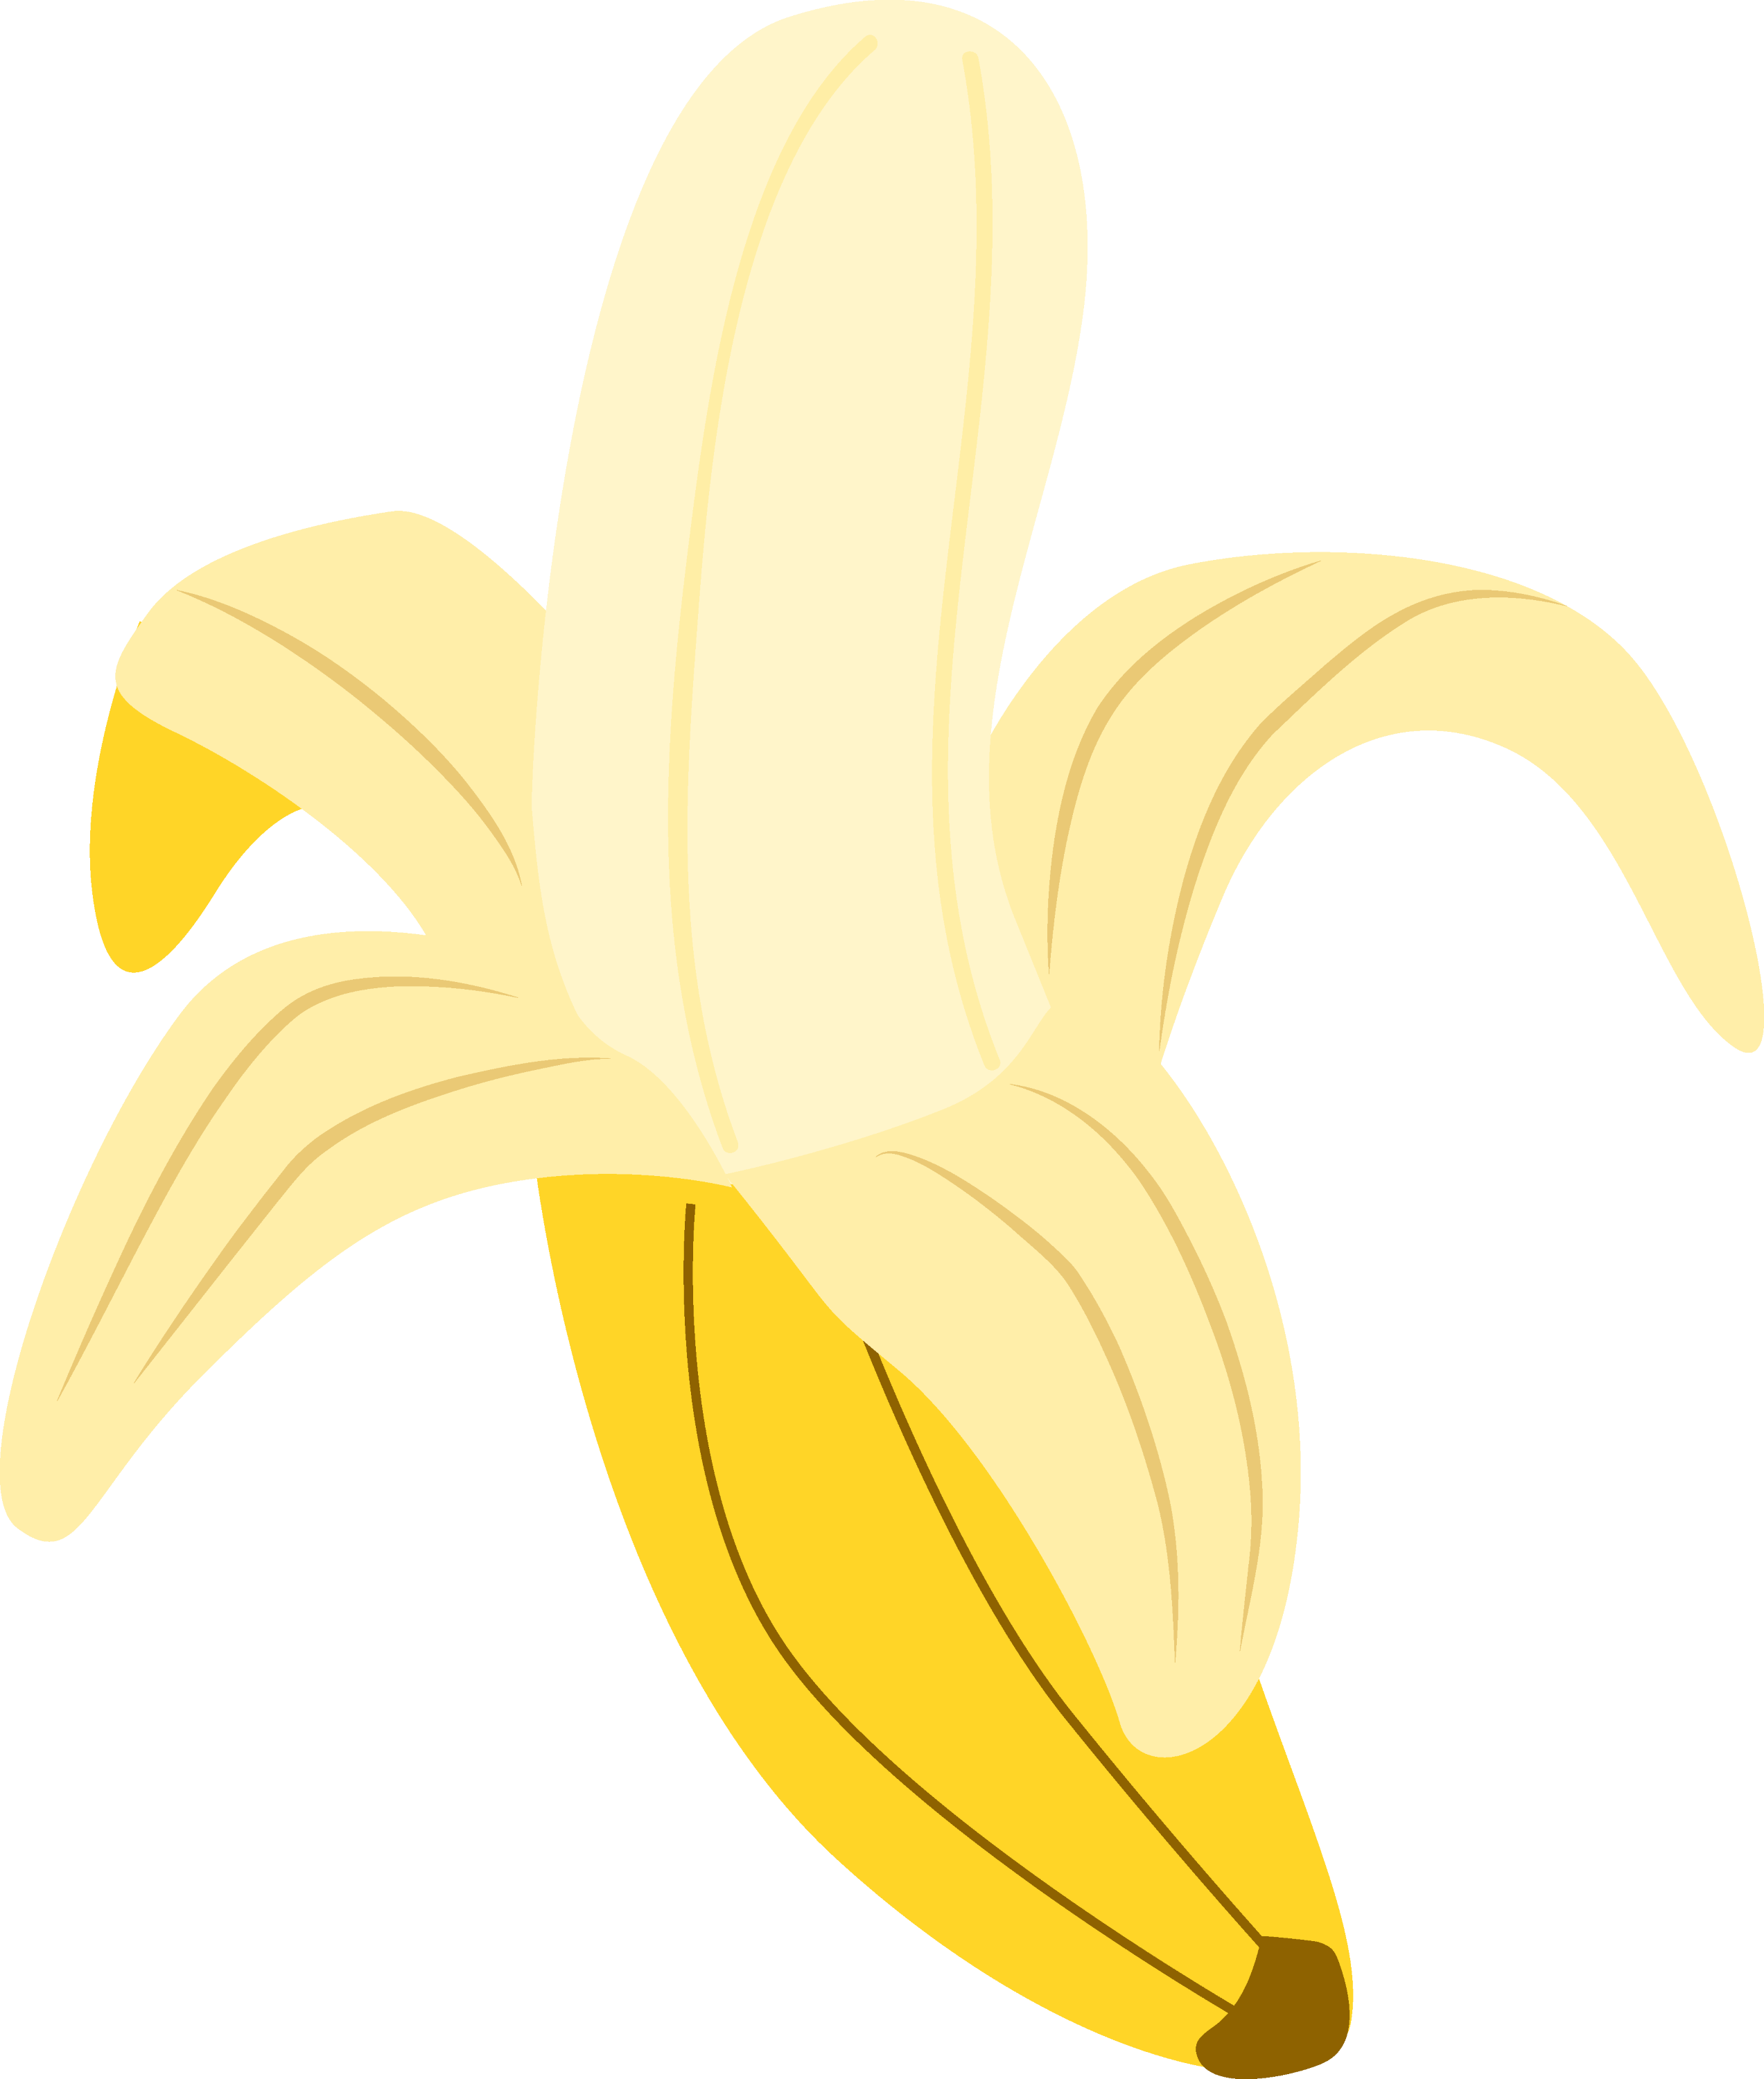 clipart of banana - photo #22